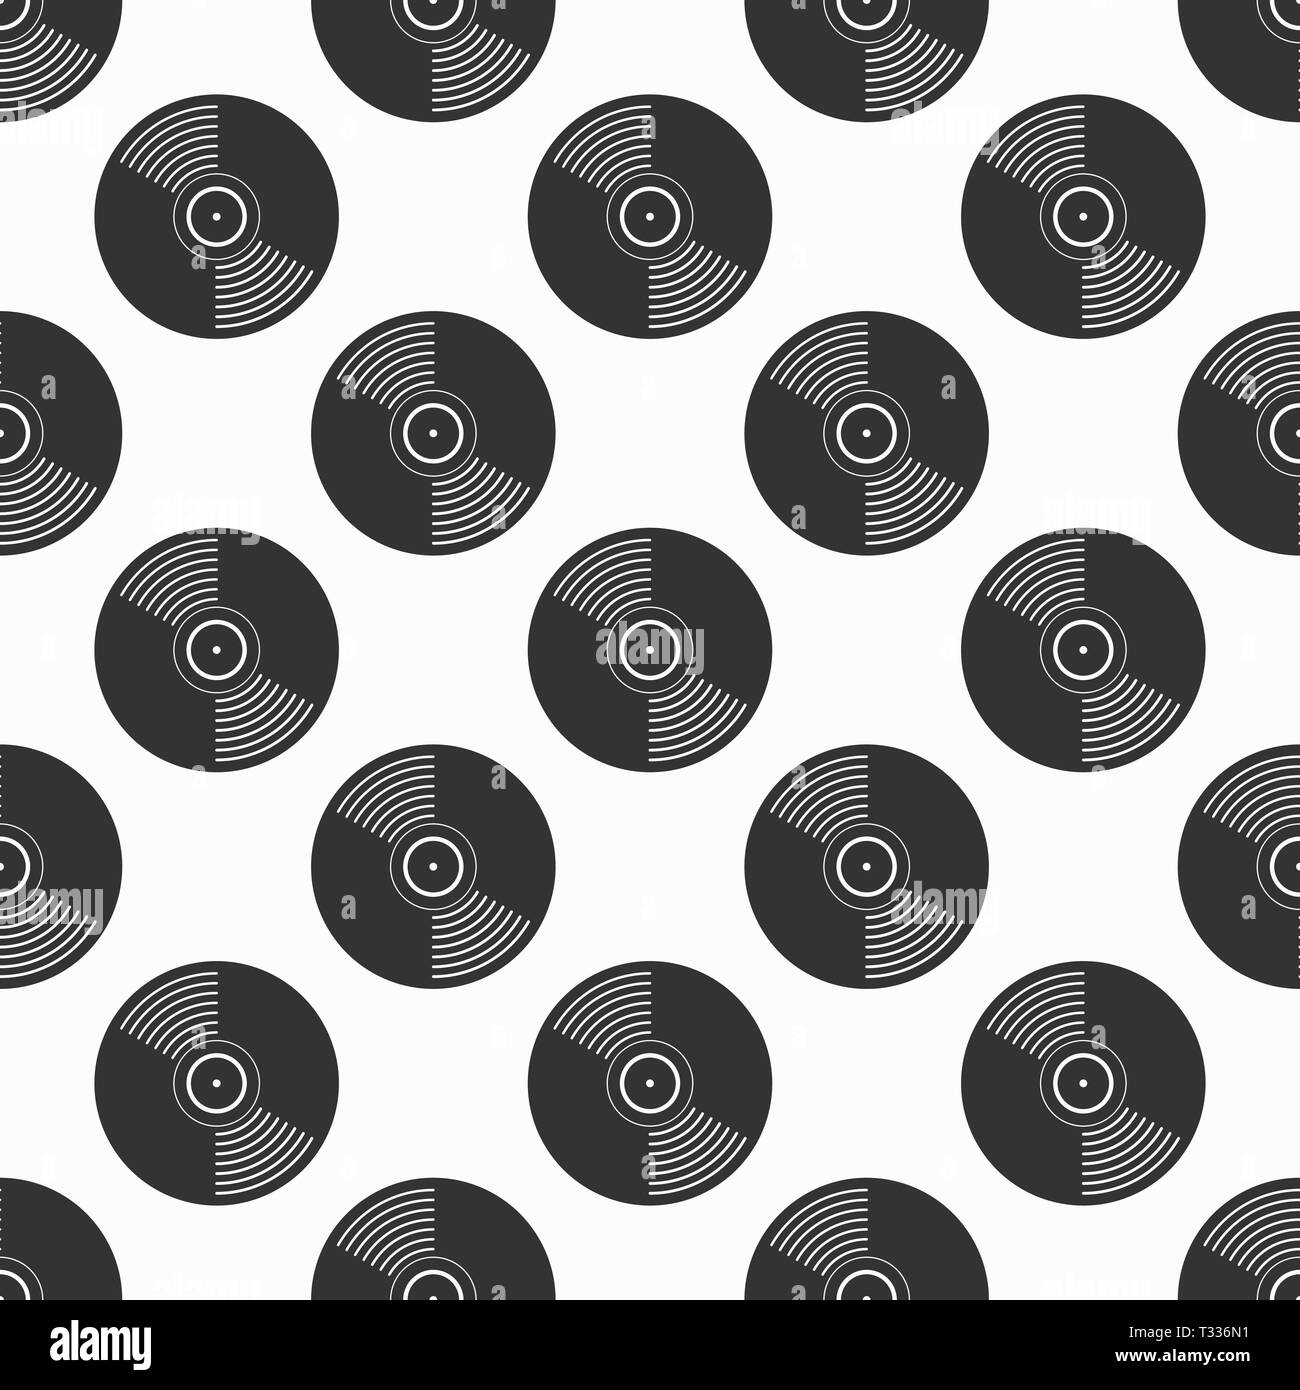 Schallplatten nahtlose Muster. Musik endlose Hintergrund. Kreativ, luxuriösen Stil. Design für Tapeten, Verpackung, Gewebe, Textilwaren, Kleidung, Web. Stock Vektor